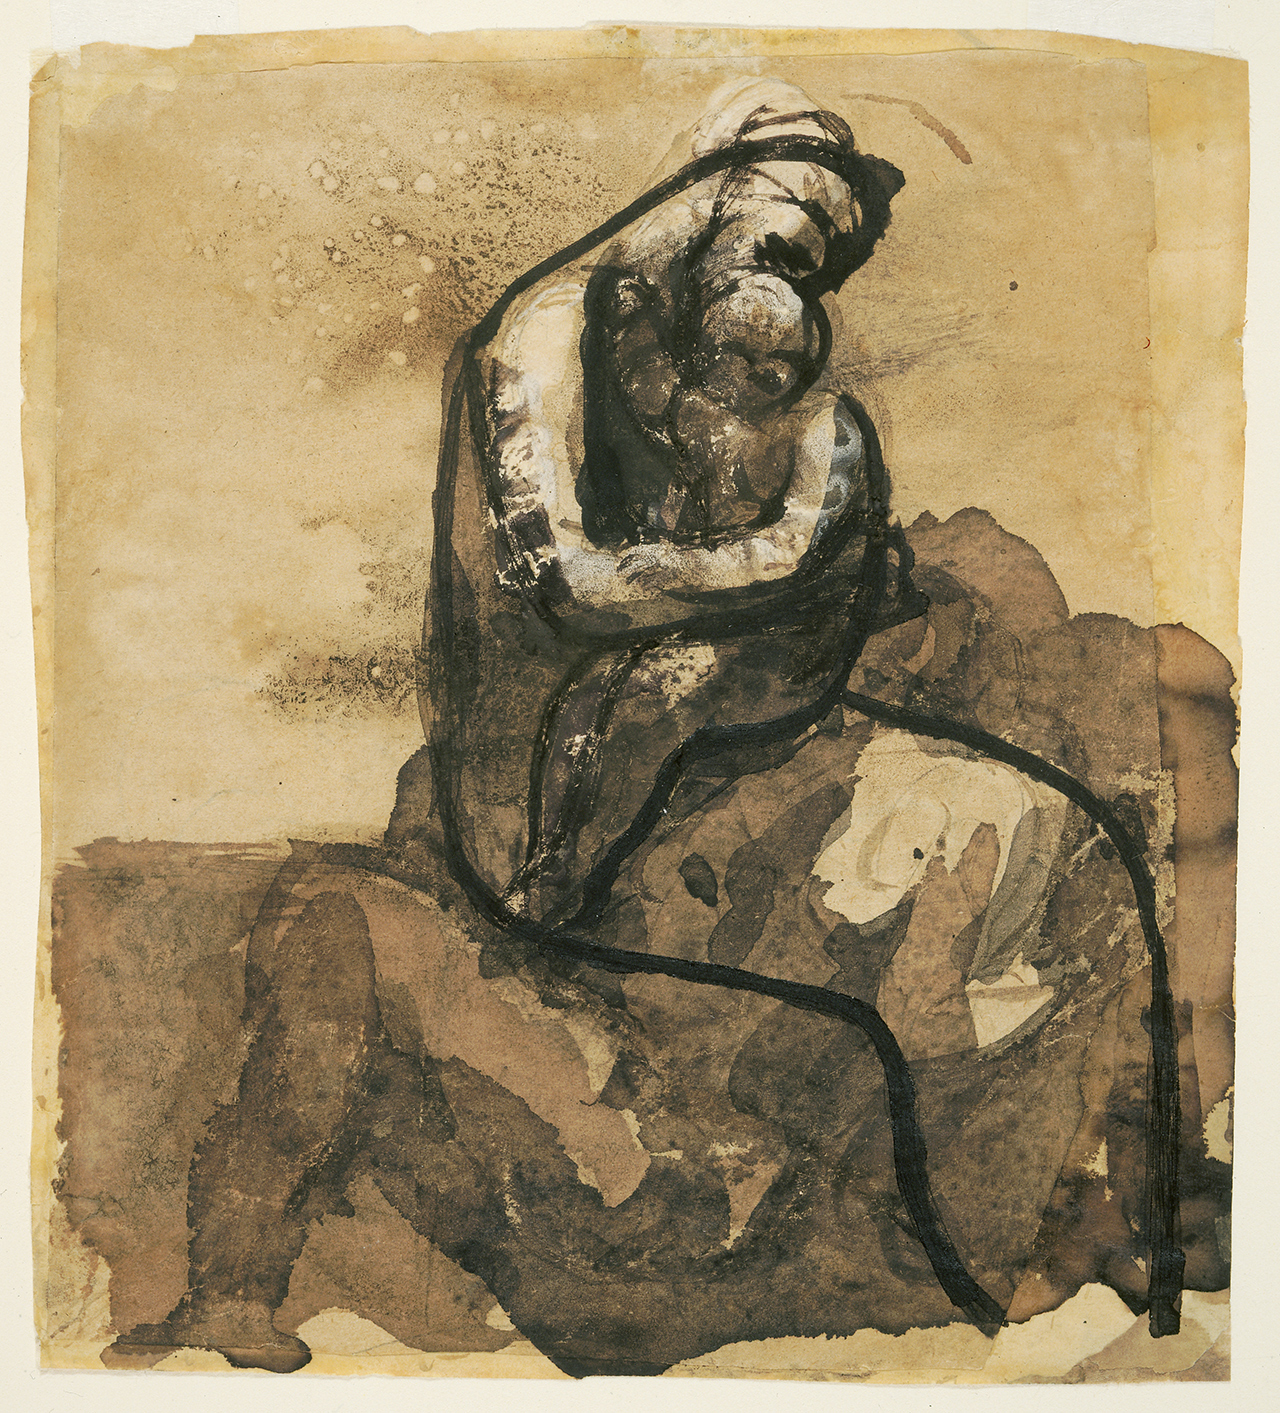 Auguste+Rodin-1840-1917 (172).jpg